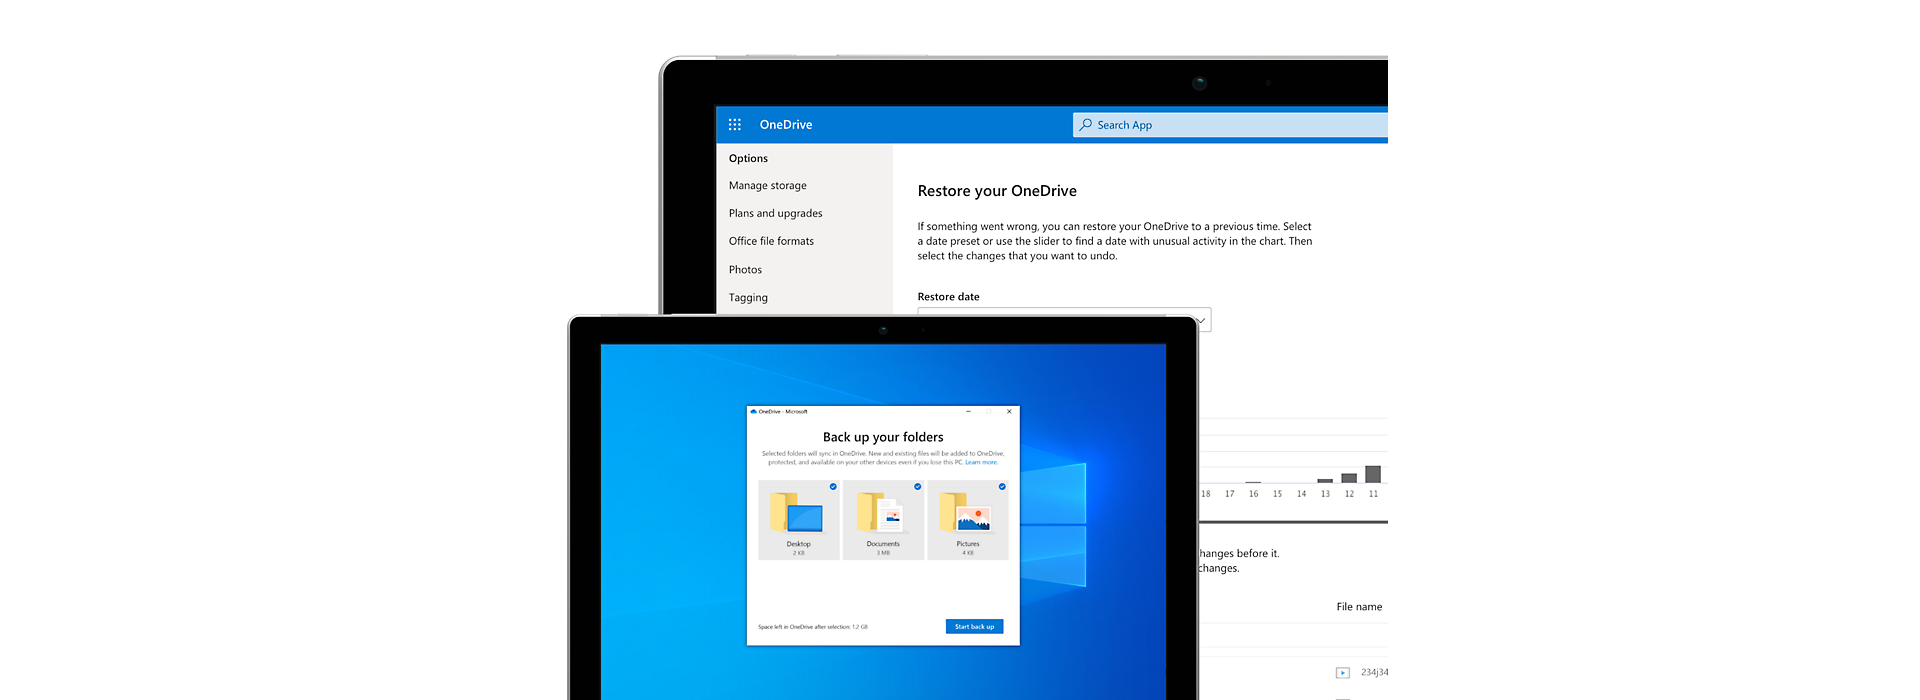 Espace de stockage en ligne Microsoft OneDrive et partage de